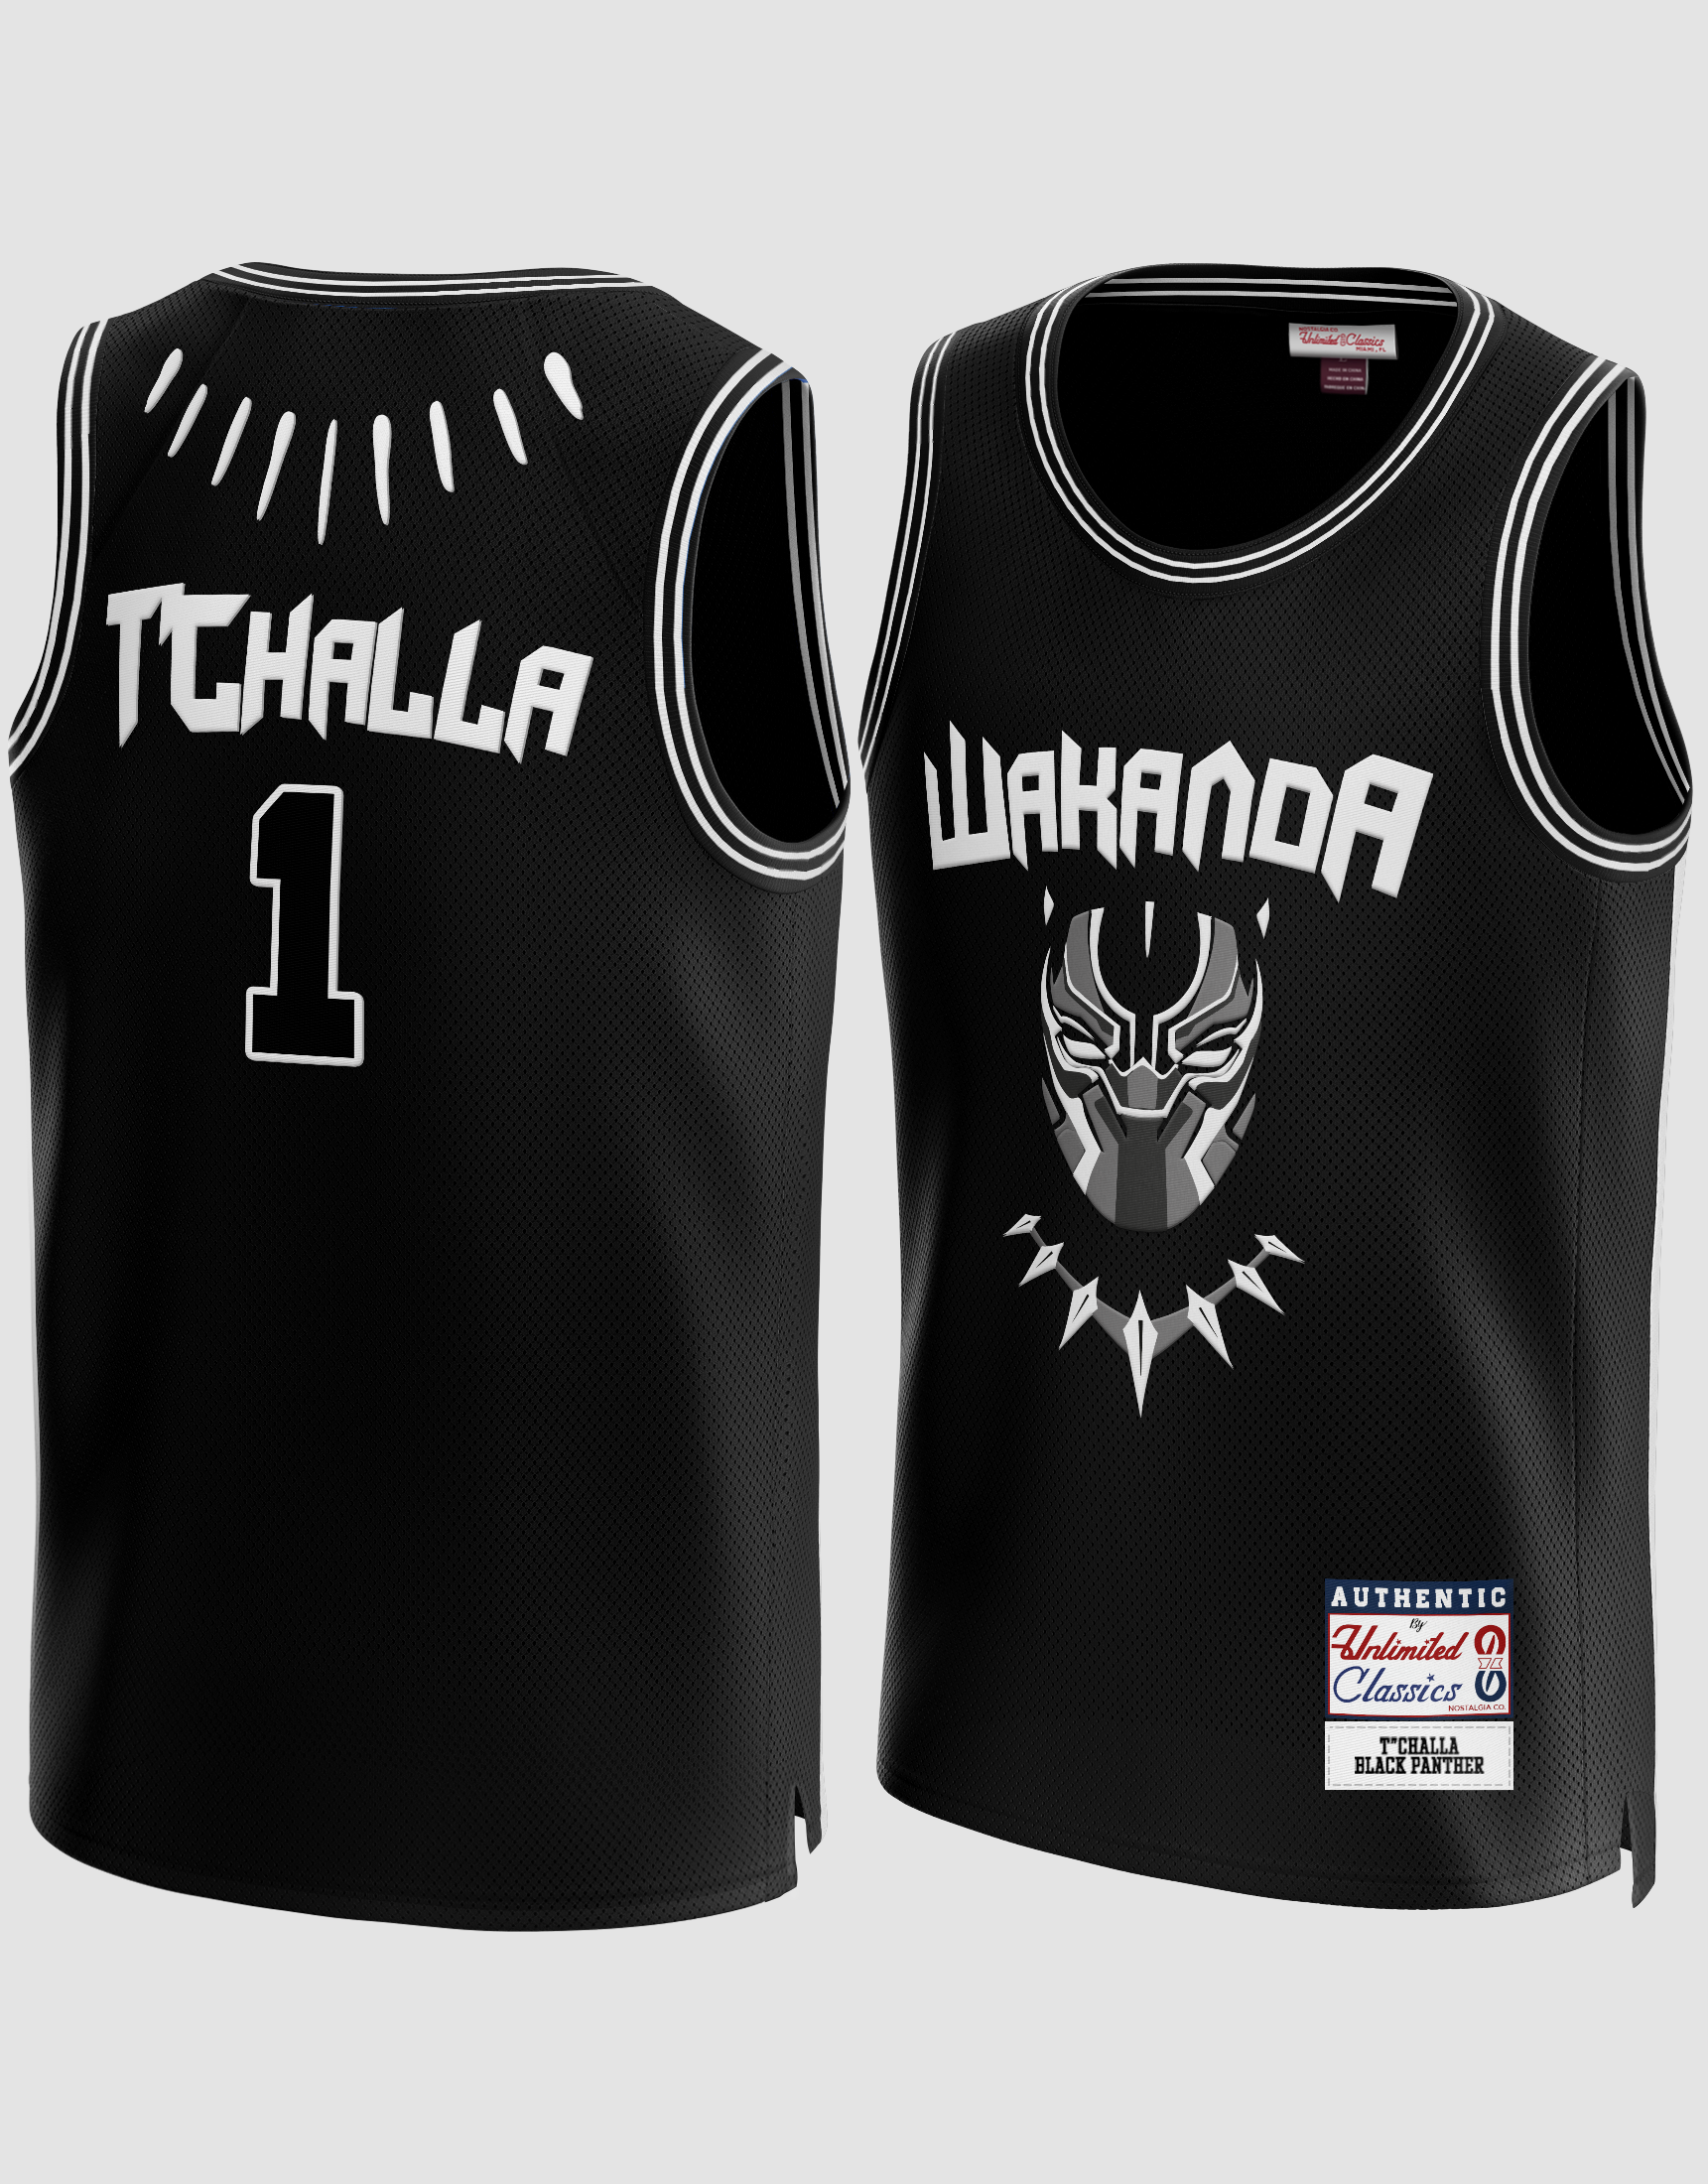 T’Challa #1 Wakanda Black Panther Basketball Jersey